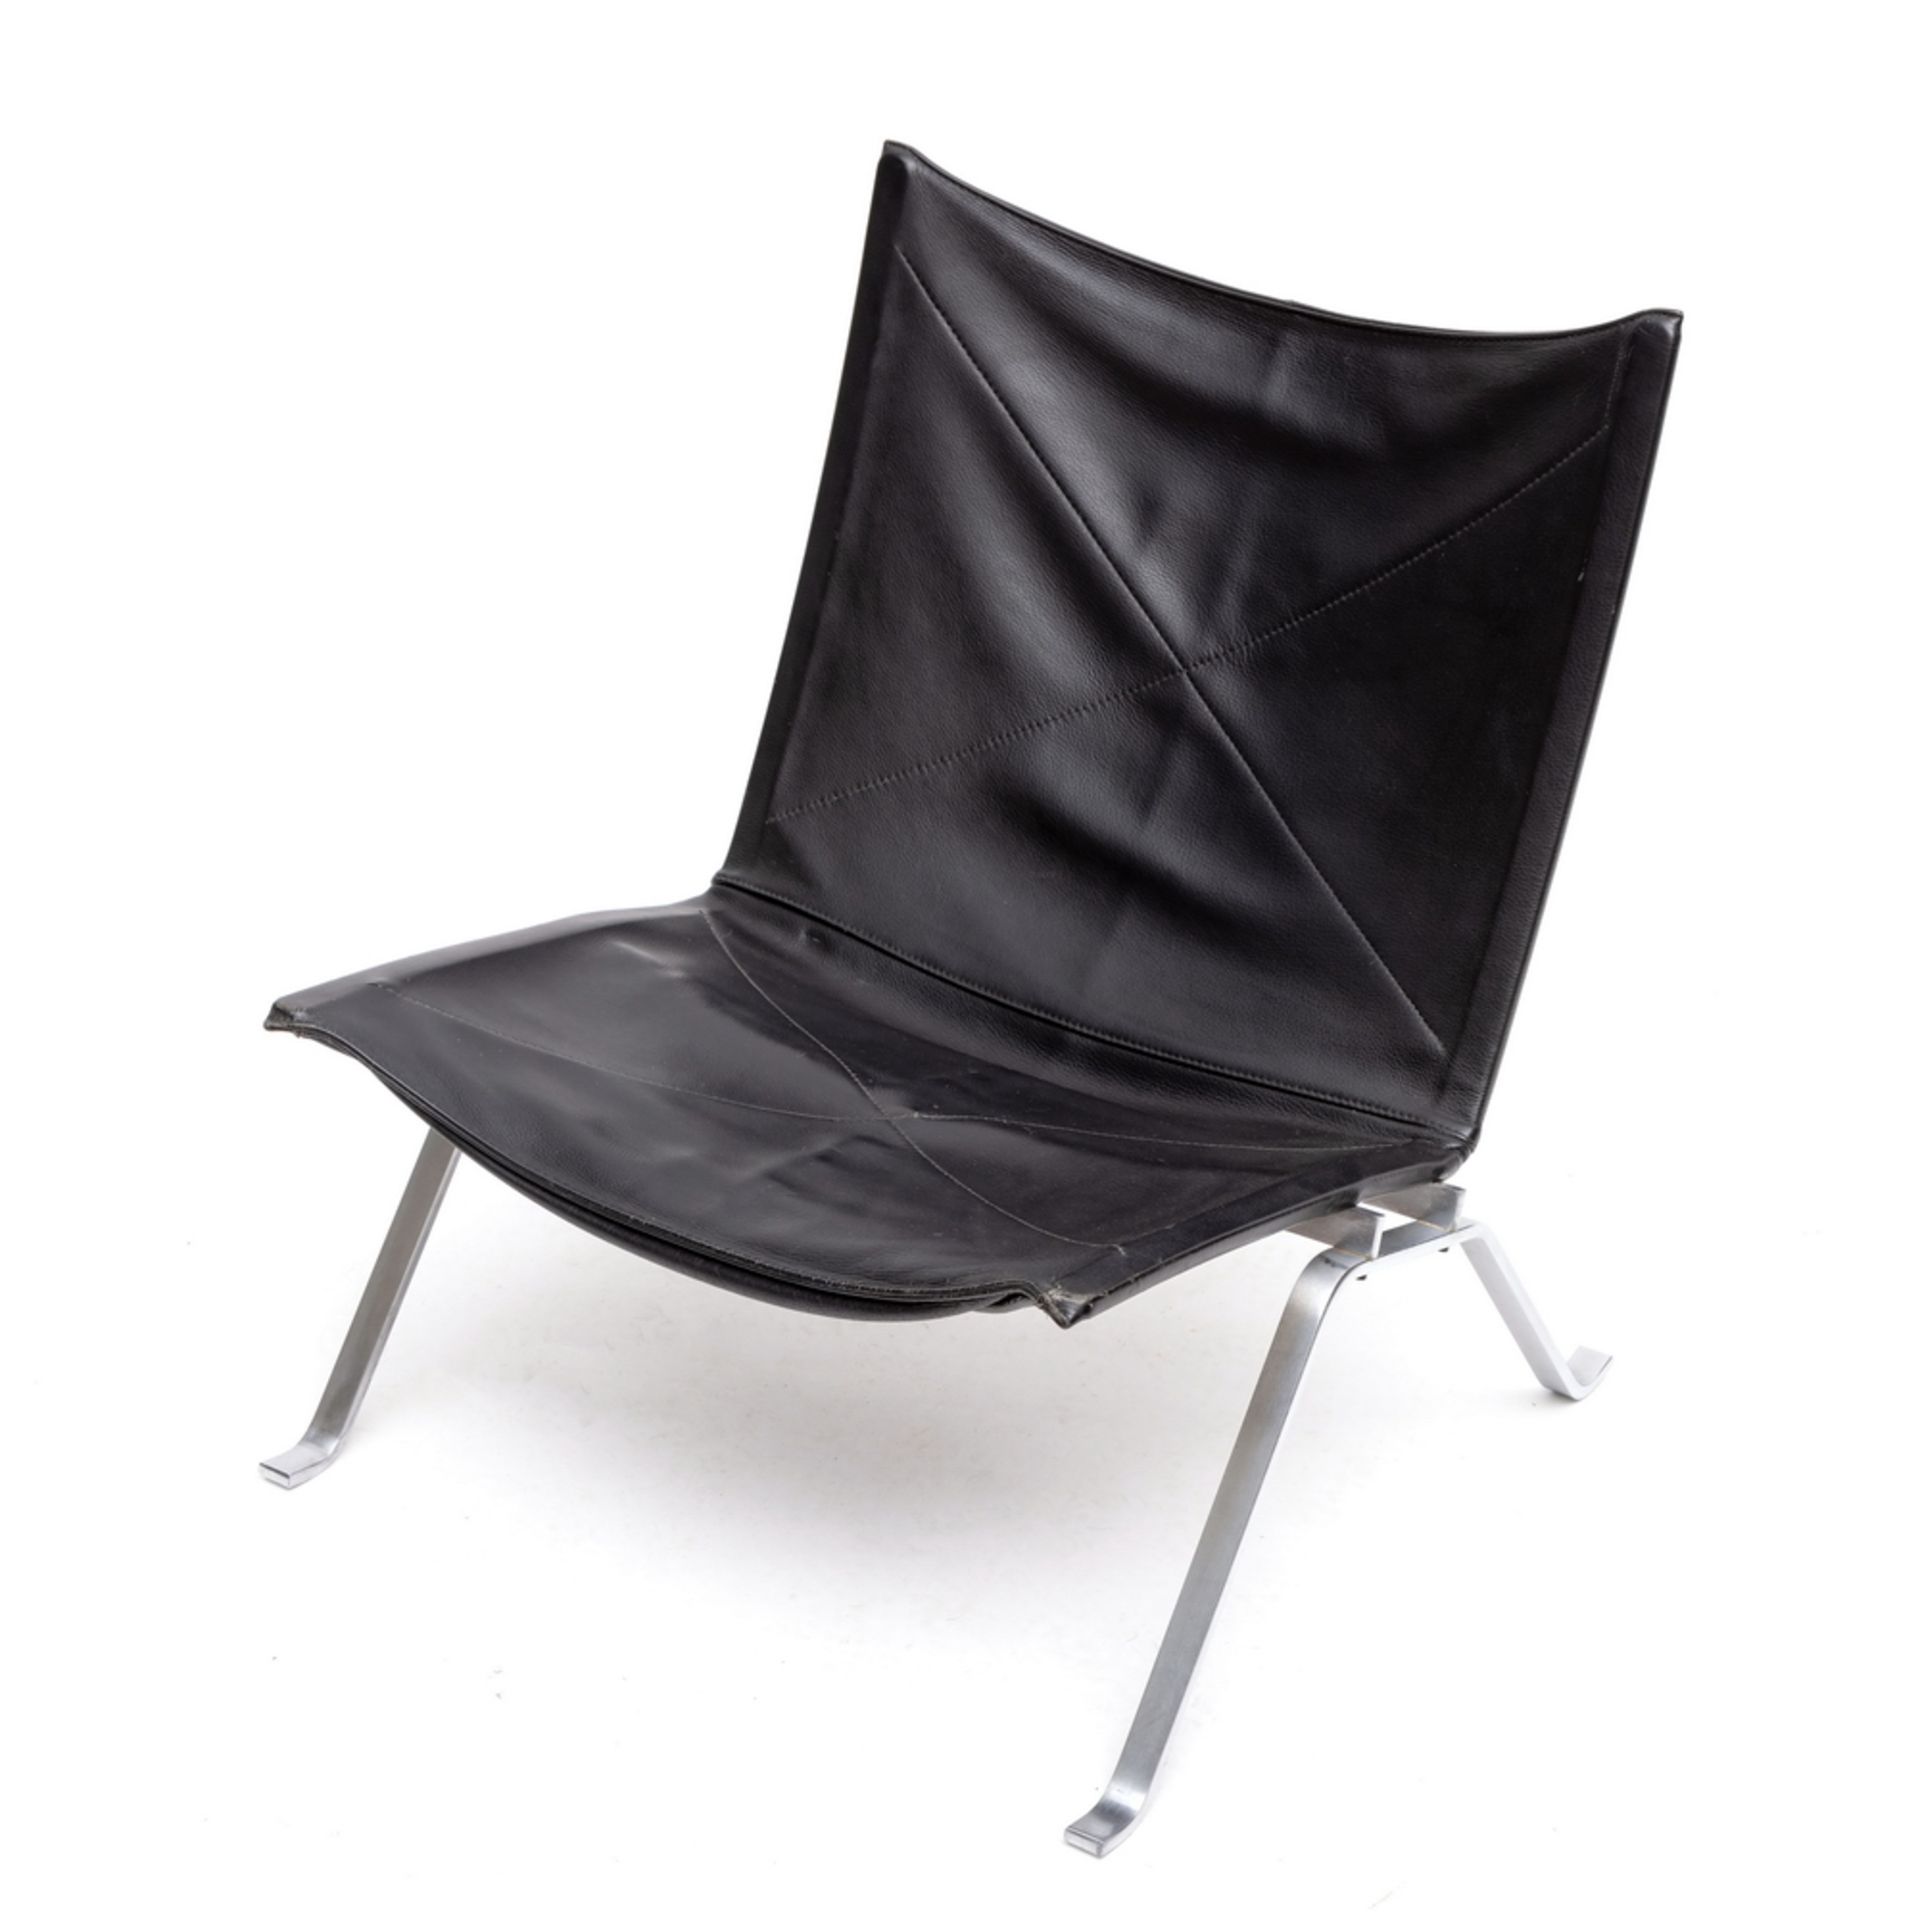 Poul Kjaerholm voor Fritz Hansen, Denenmarken, PK22 lounge chair, ontwerp 1955-1956, vervaardigd 198 - Image 2 of 8